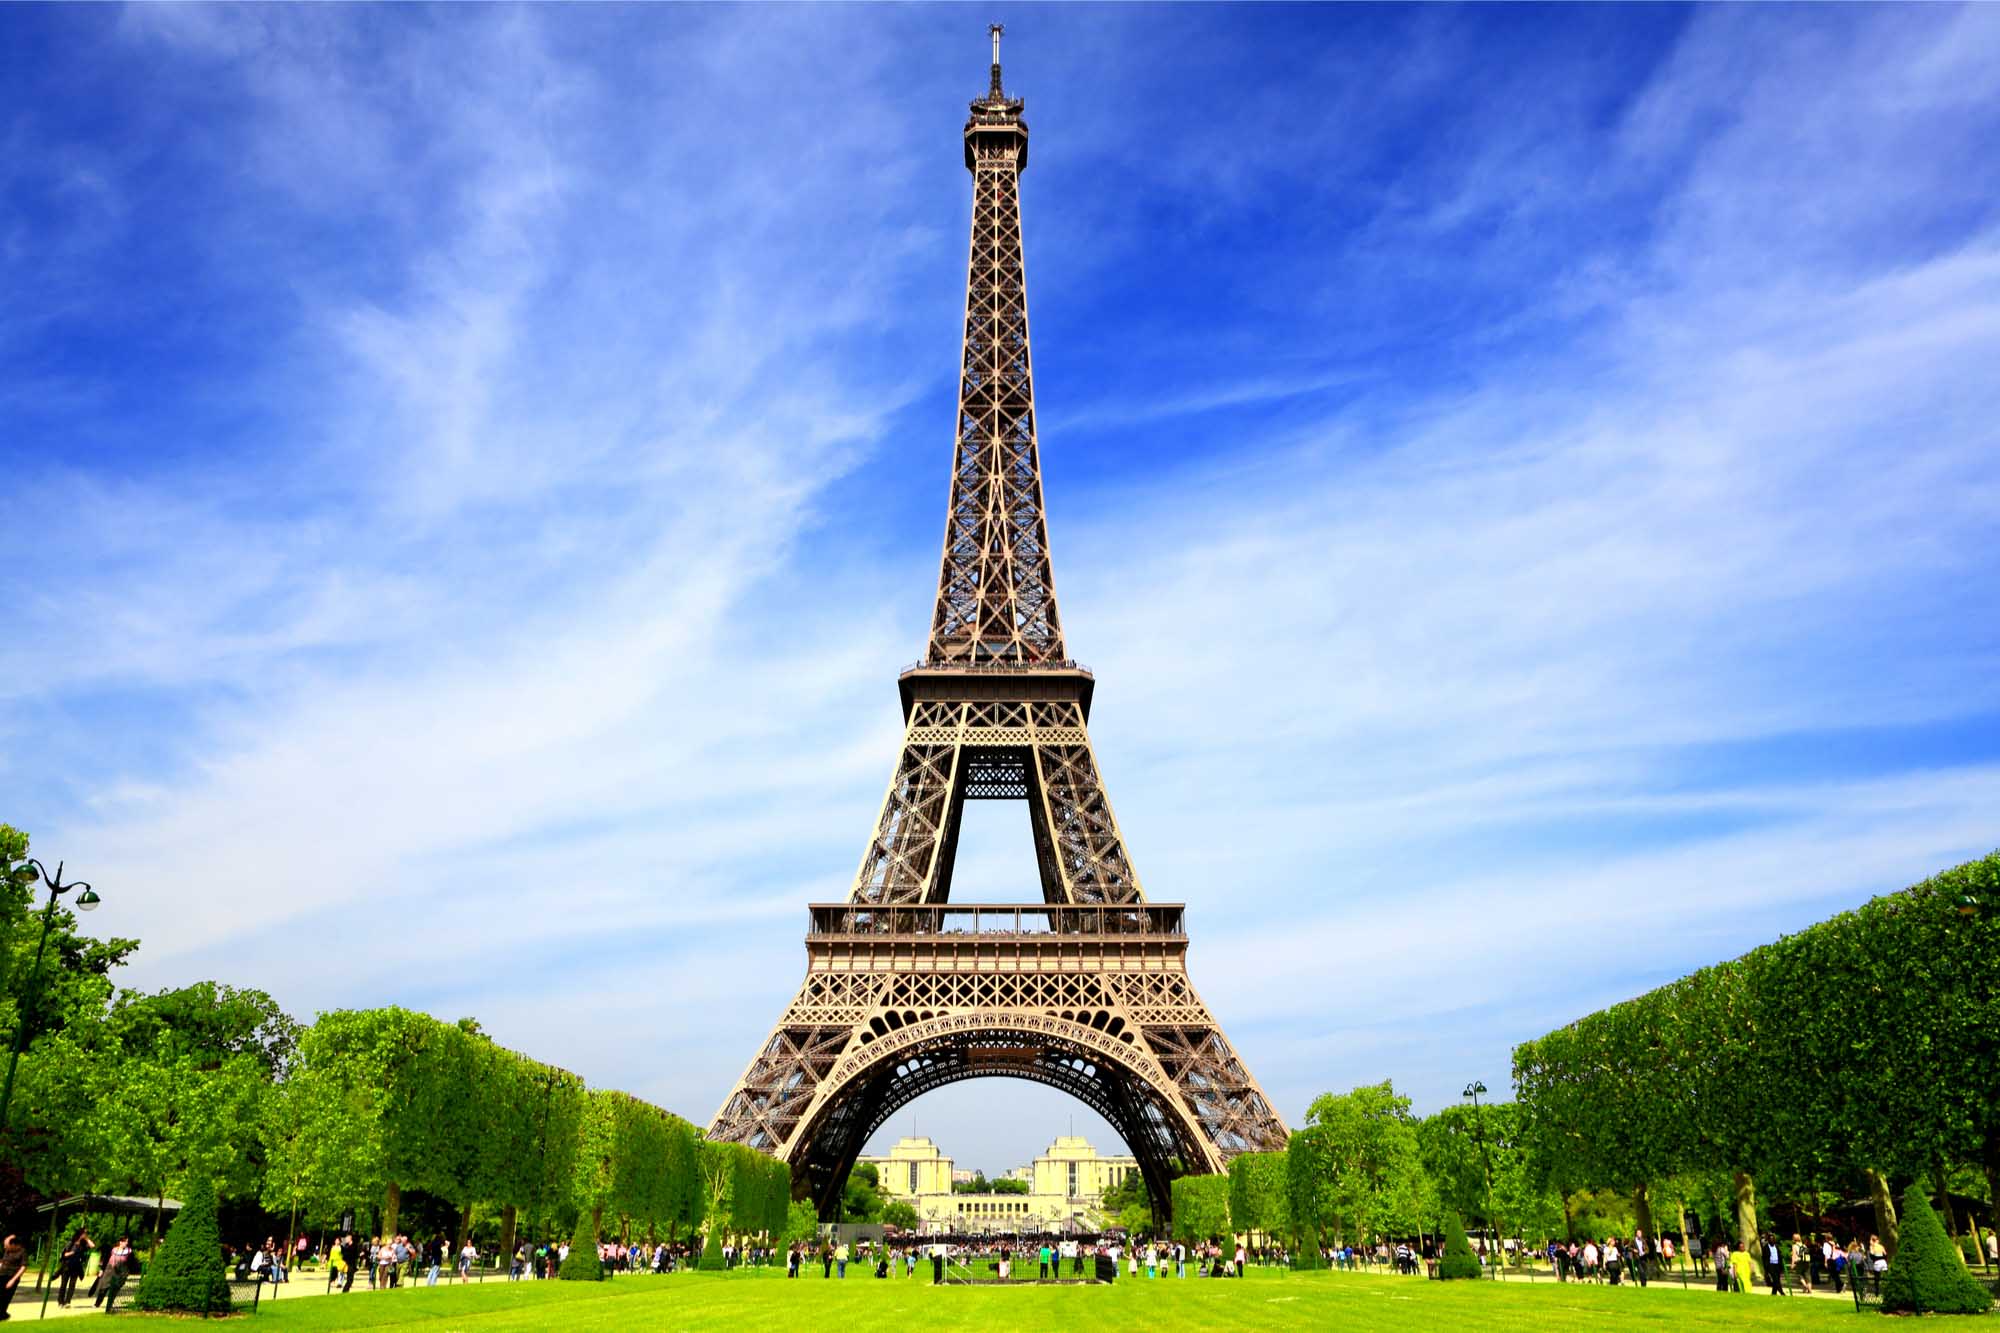 The Eiffel Tower against a blue sky